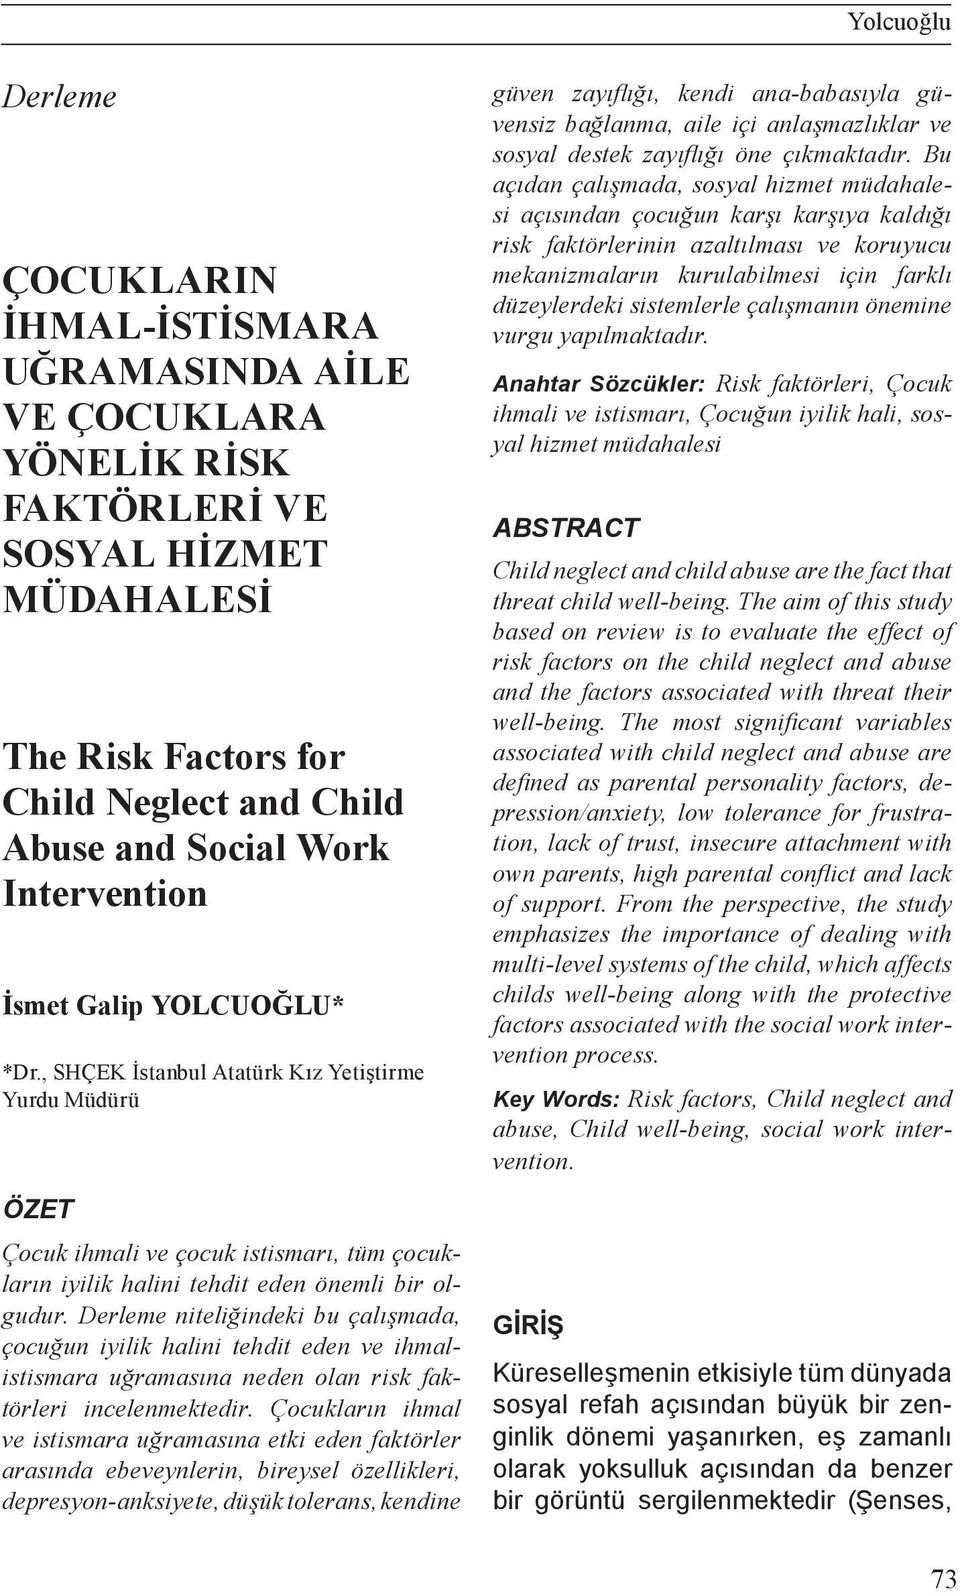 Derleme niteliğindeki bu çalışmada, çocuğun iyilik halini tehdit eden ve ihmalistismara uğramasına neden olan risk faktörleri incelenmektedir.